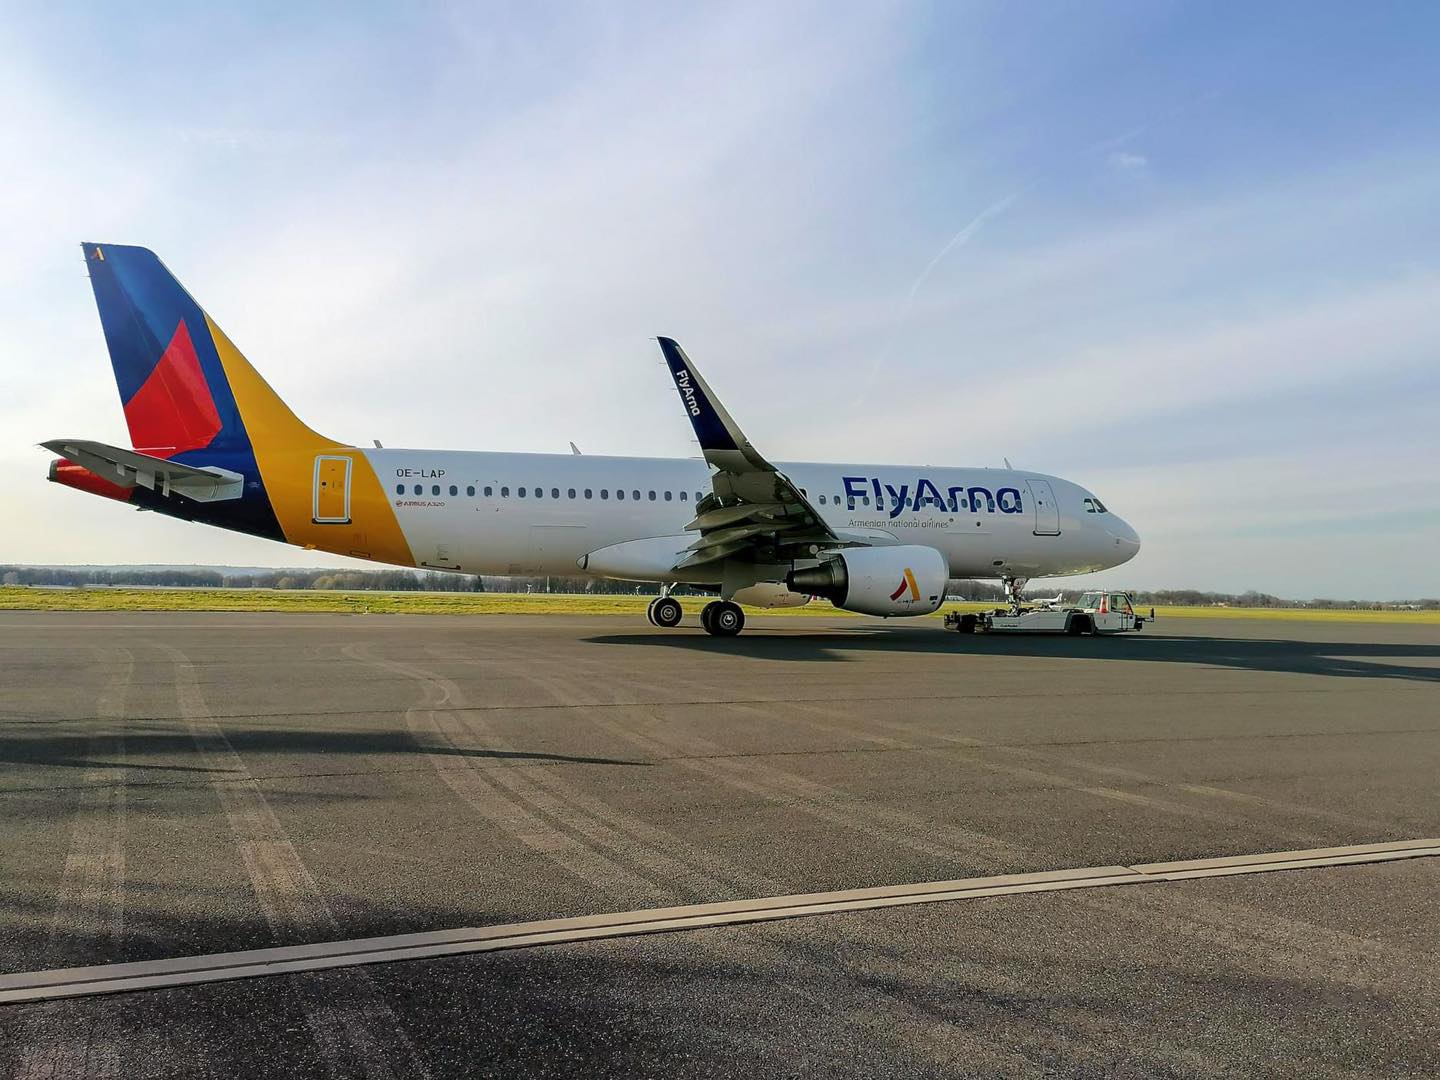 Fly Arna ավիաընկերությունը տվեց դեպի Հուրգադա և Շարմ էլ Շեյխ չվերթերի մեկնարկը